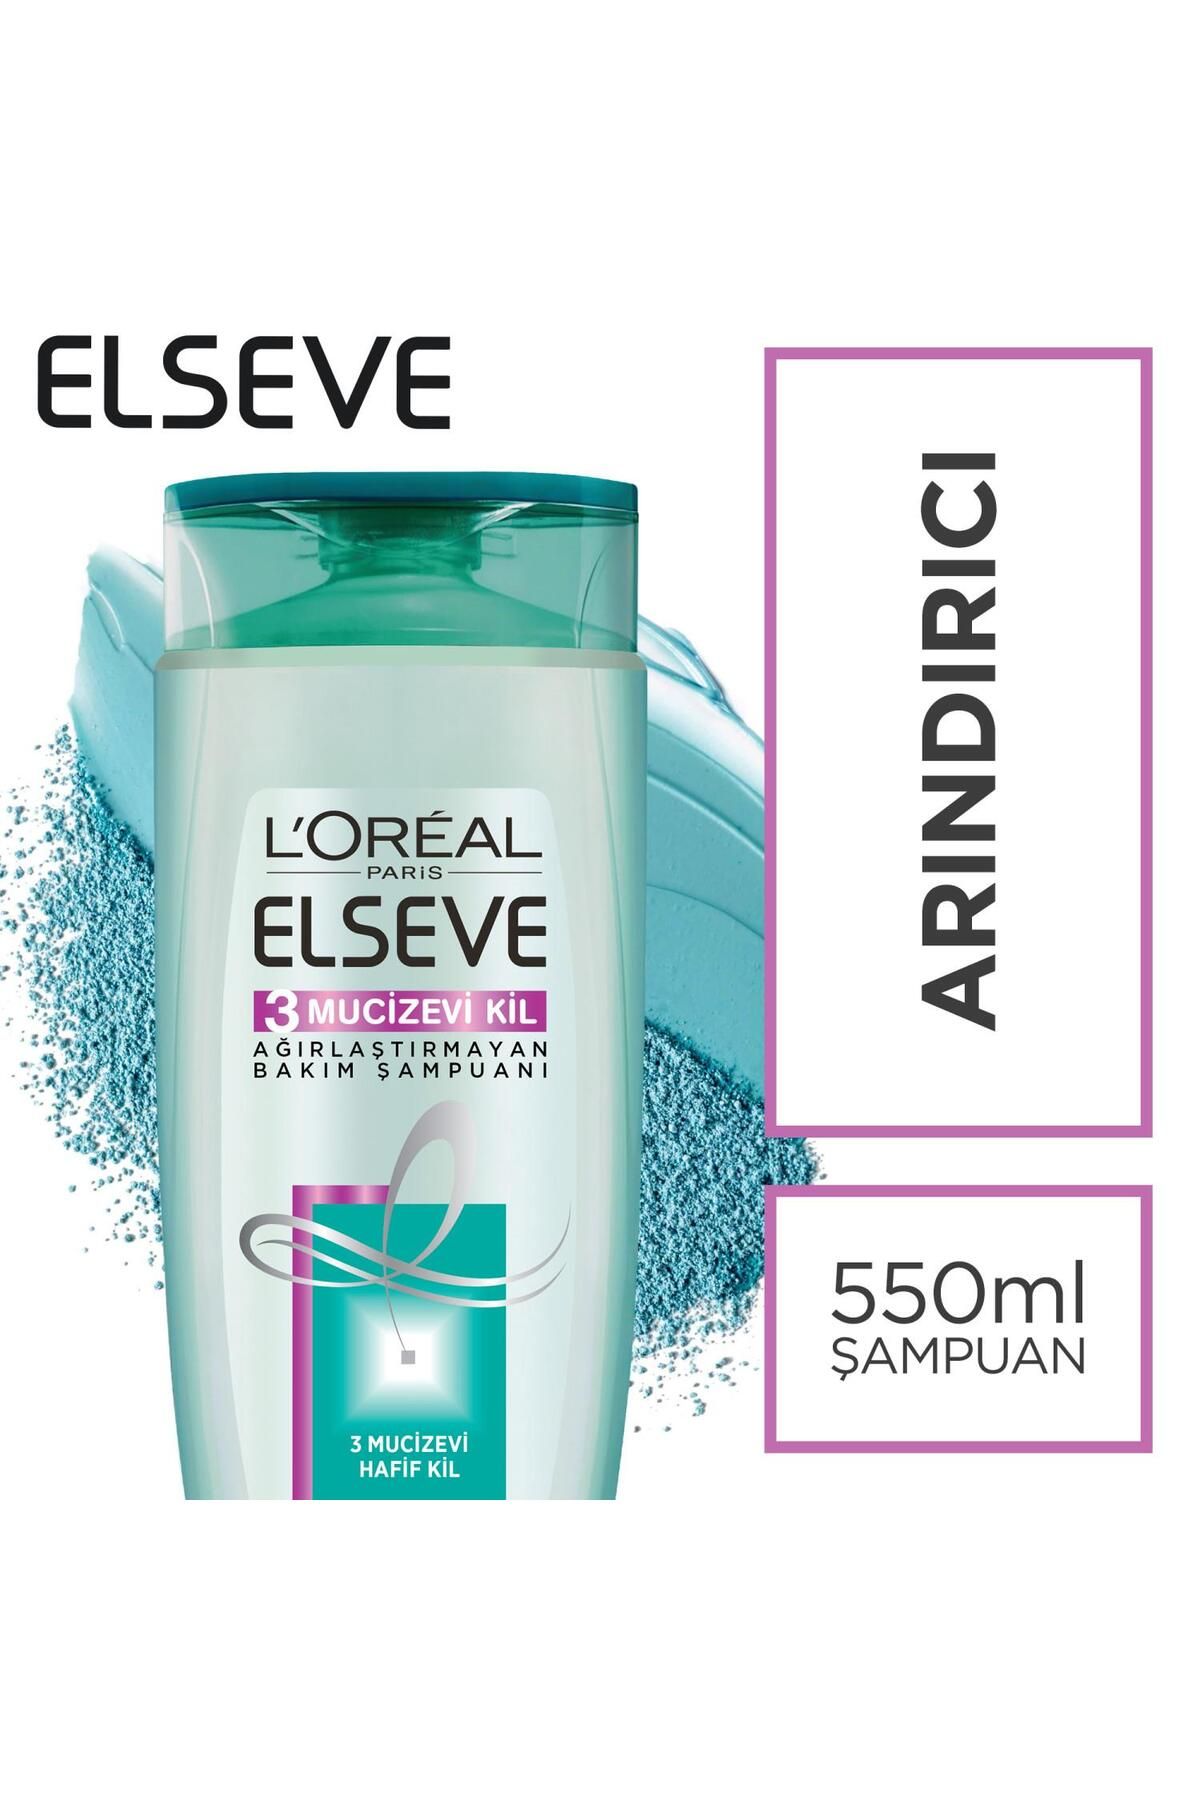 Elseve L'oréal Paris 3 Mucizevi Kil Ağırlaştırmayan Bakım Şampuanı 550 ml